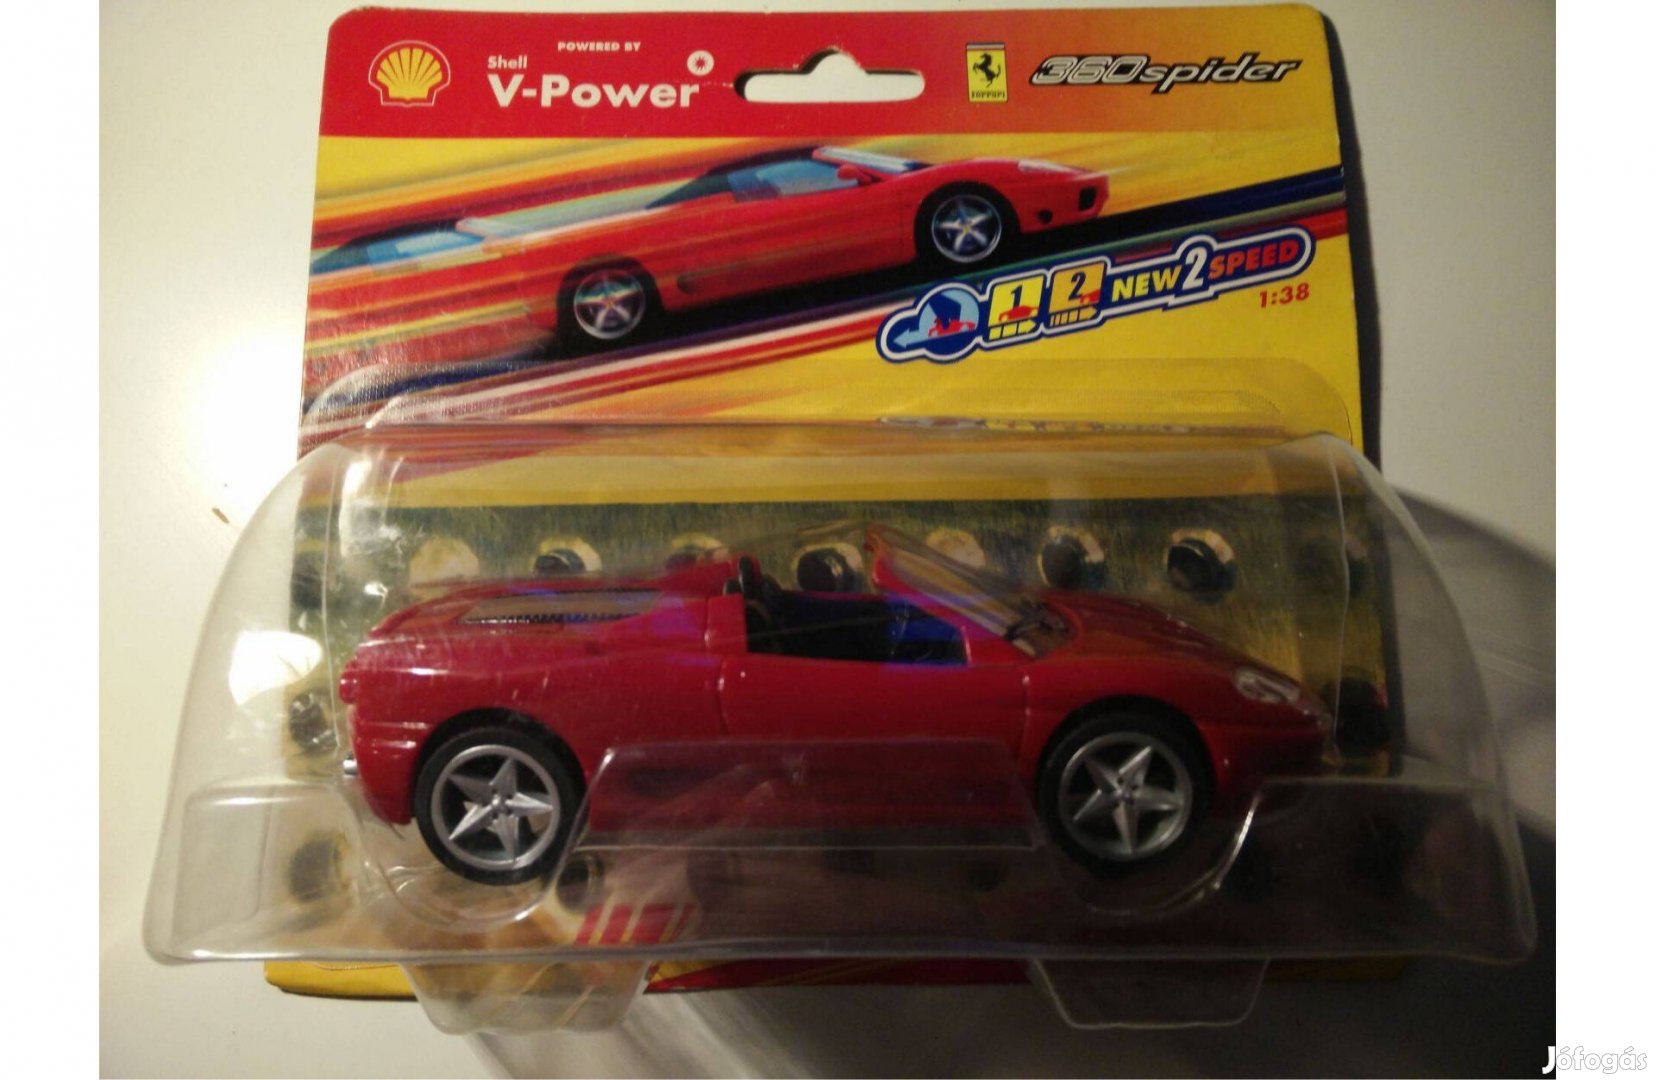 Shell V-Power Ferrari "360spider" 1:38 modell kisautó, bontatlan